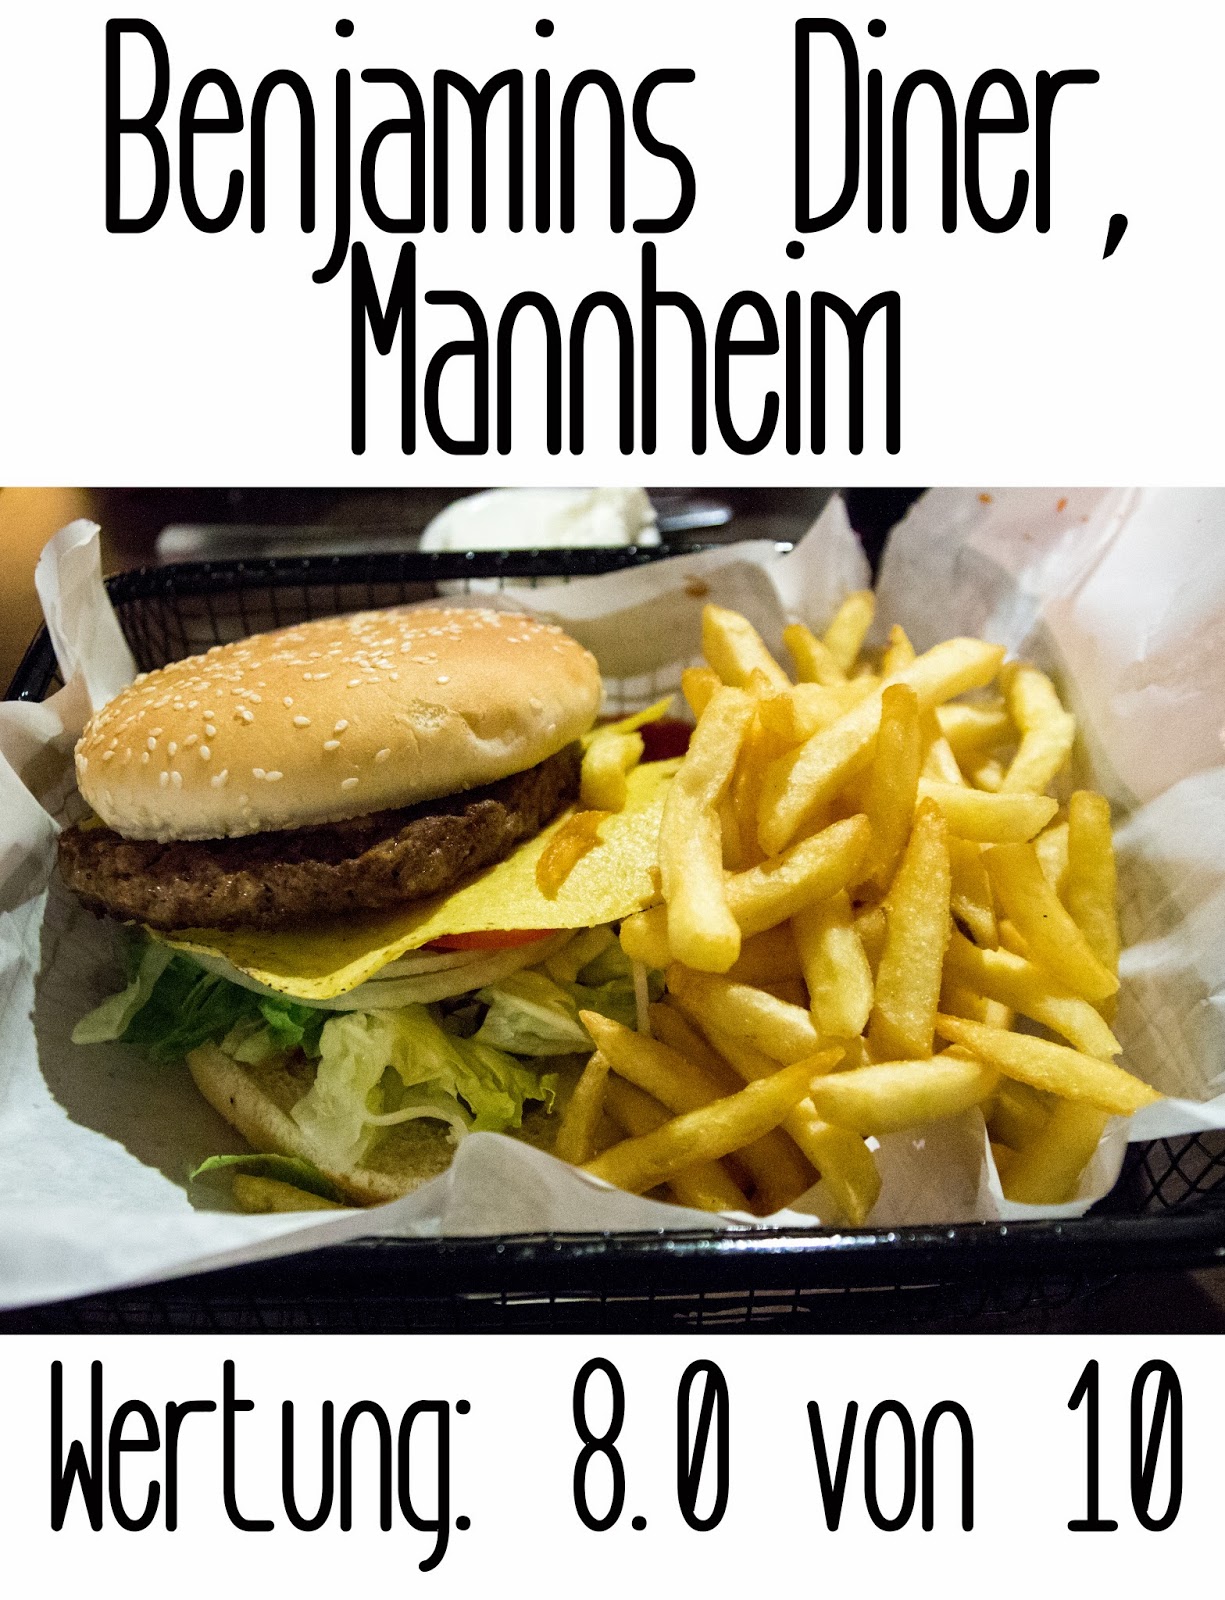 http://germanysbestburger.blogspot.de/2014/05/benjamins-diner-mannheim.html